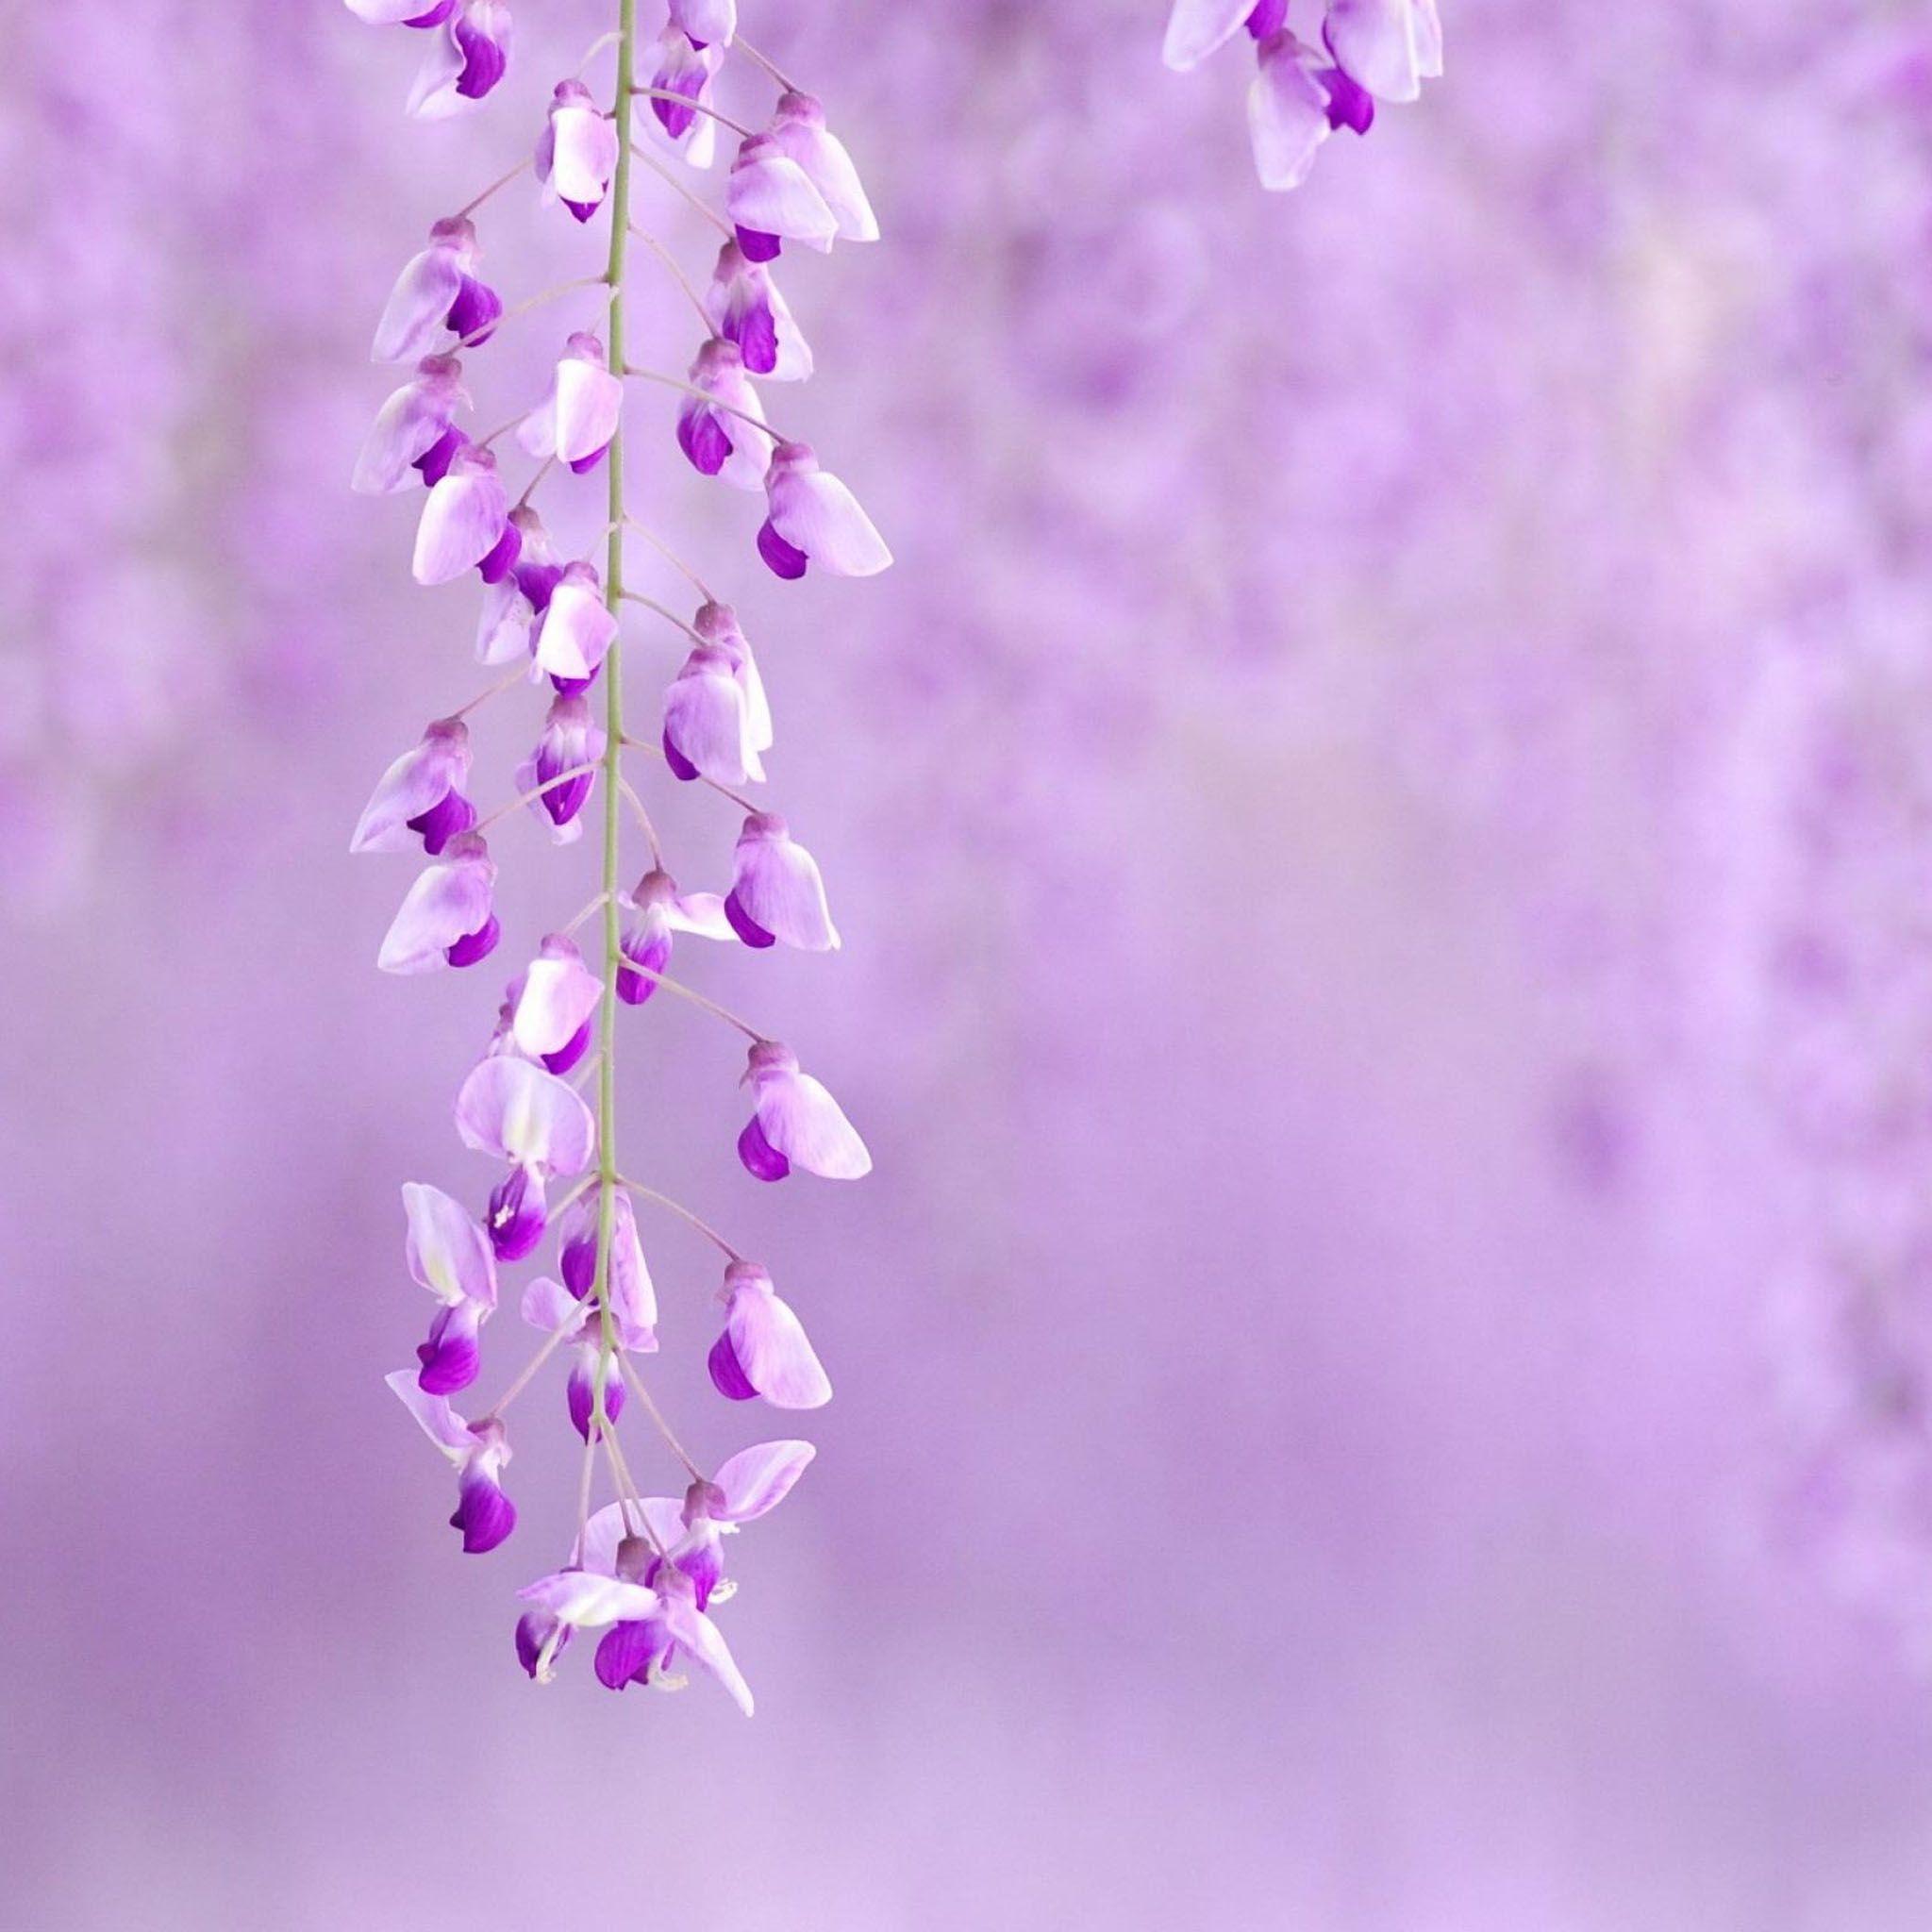 Purple Flower Backgrounds - Light Purple Flower Background Hd - HD Wallpaper 